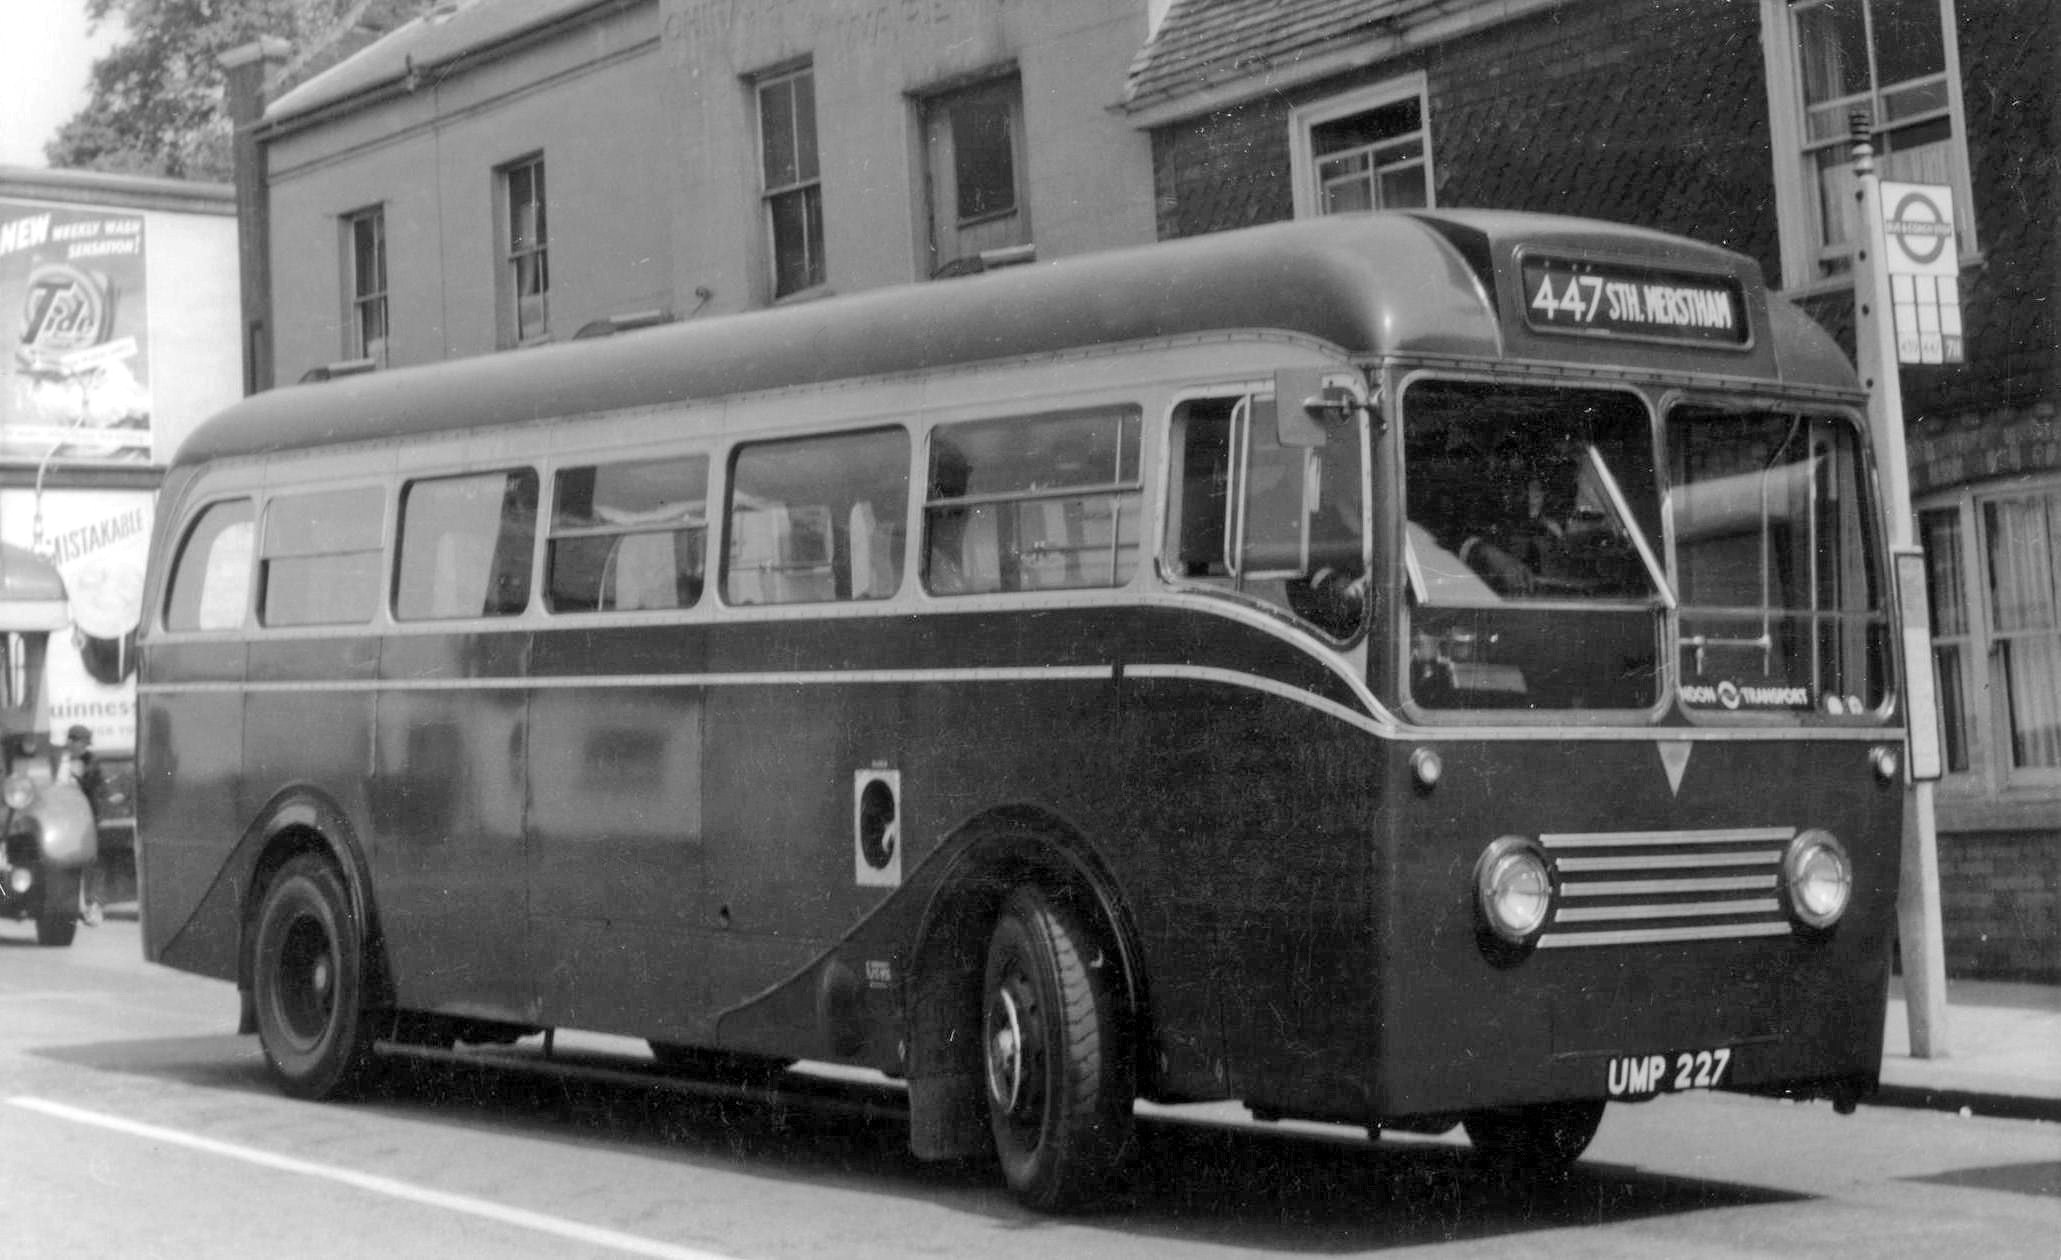 1949 AEC Regal IV prototype bus - UMP 227 - London Bus Museum